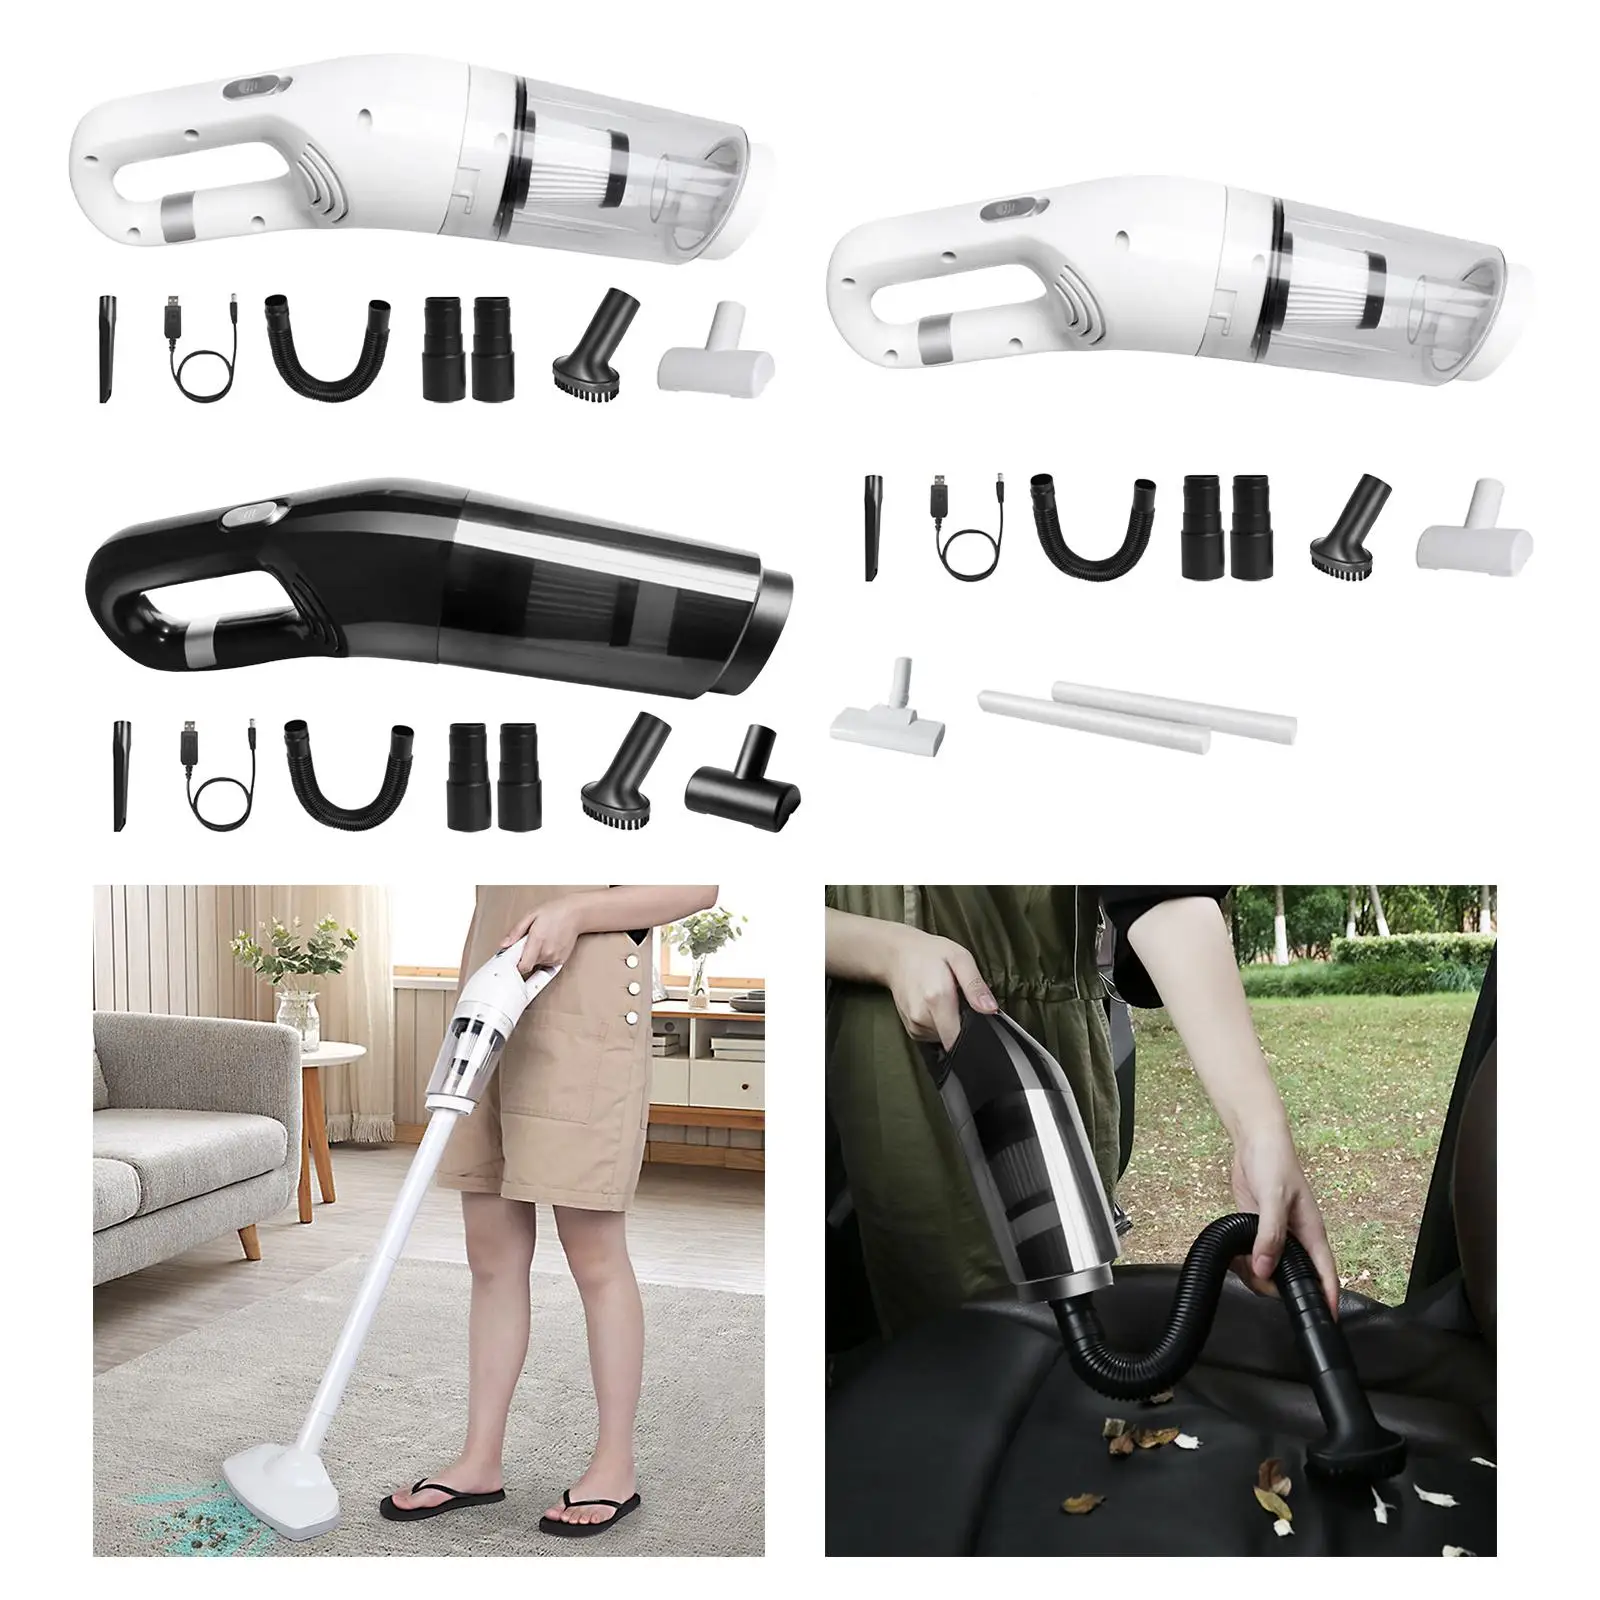 Car Vacuum Cleaner Stick Vacuum Cleaner Auto Accessories for